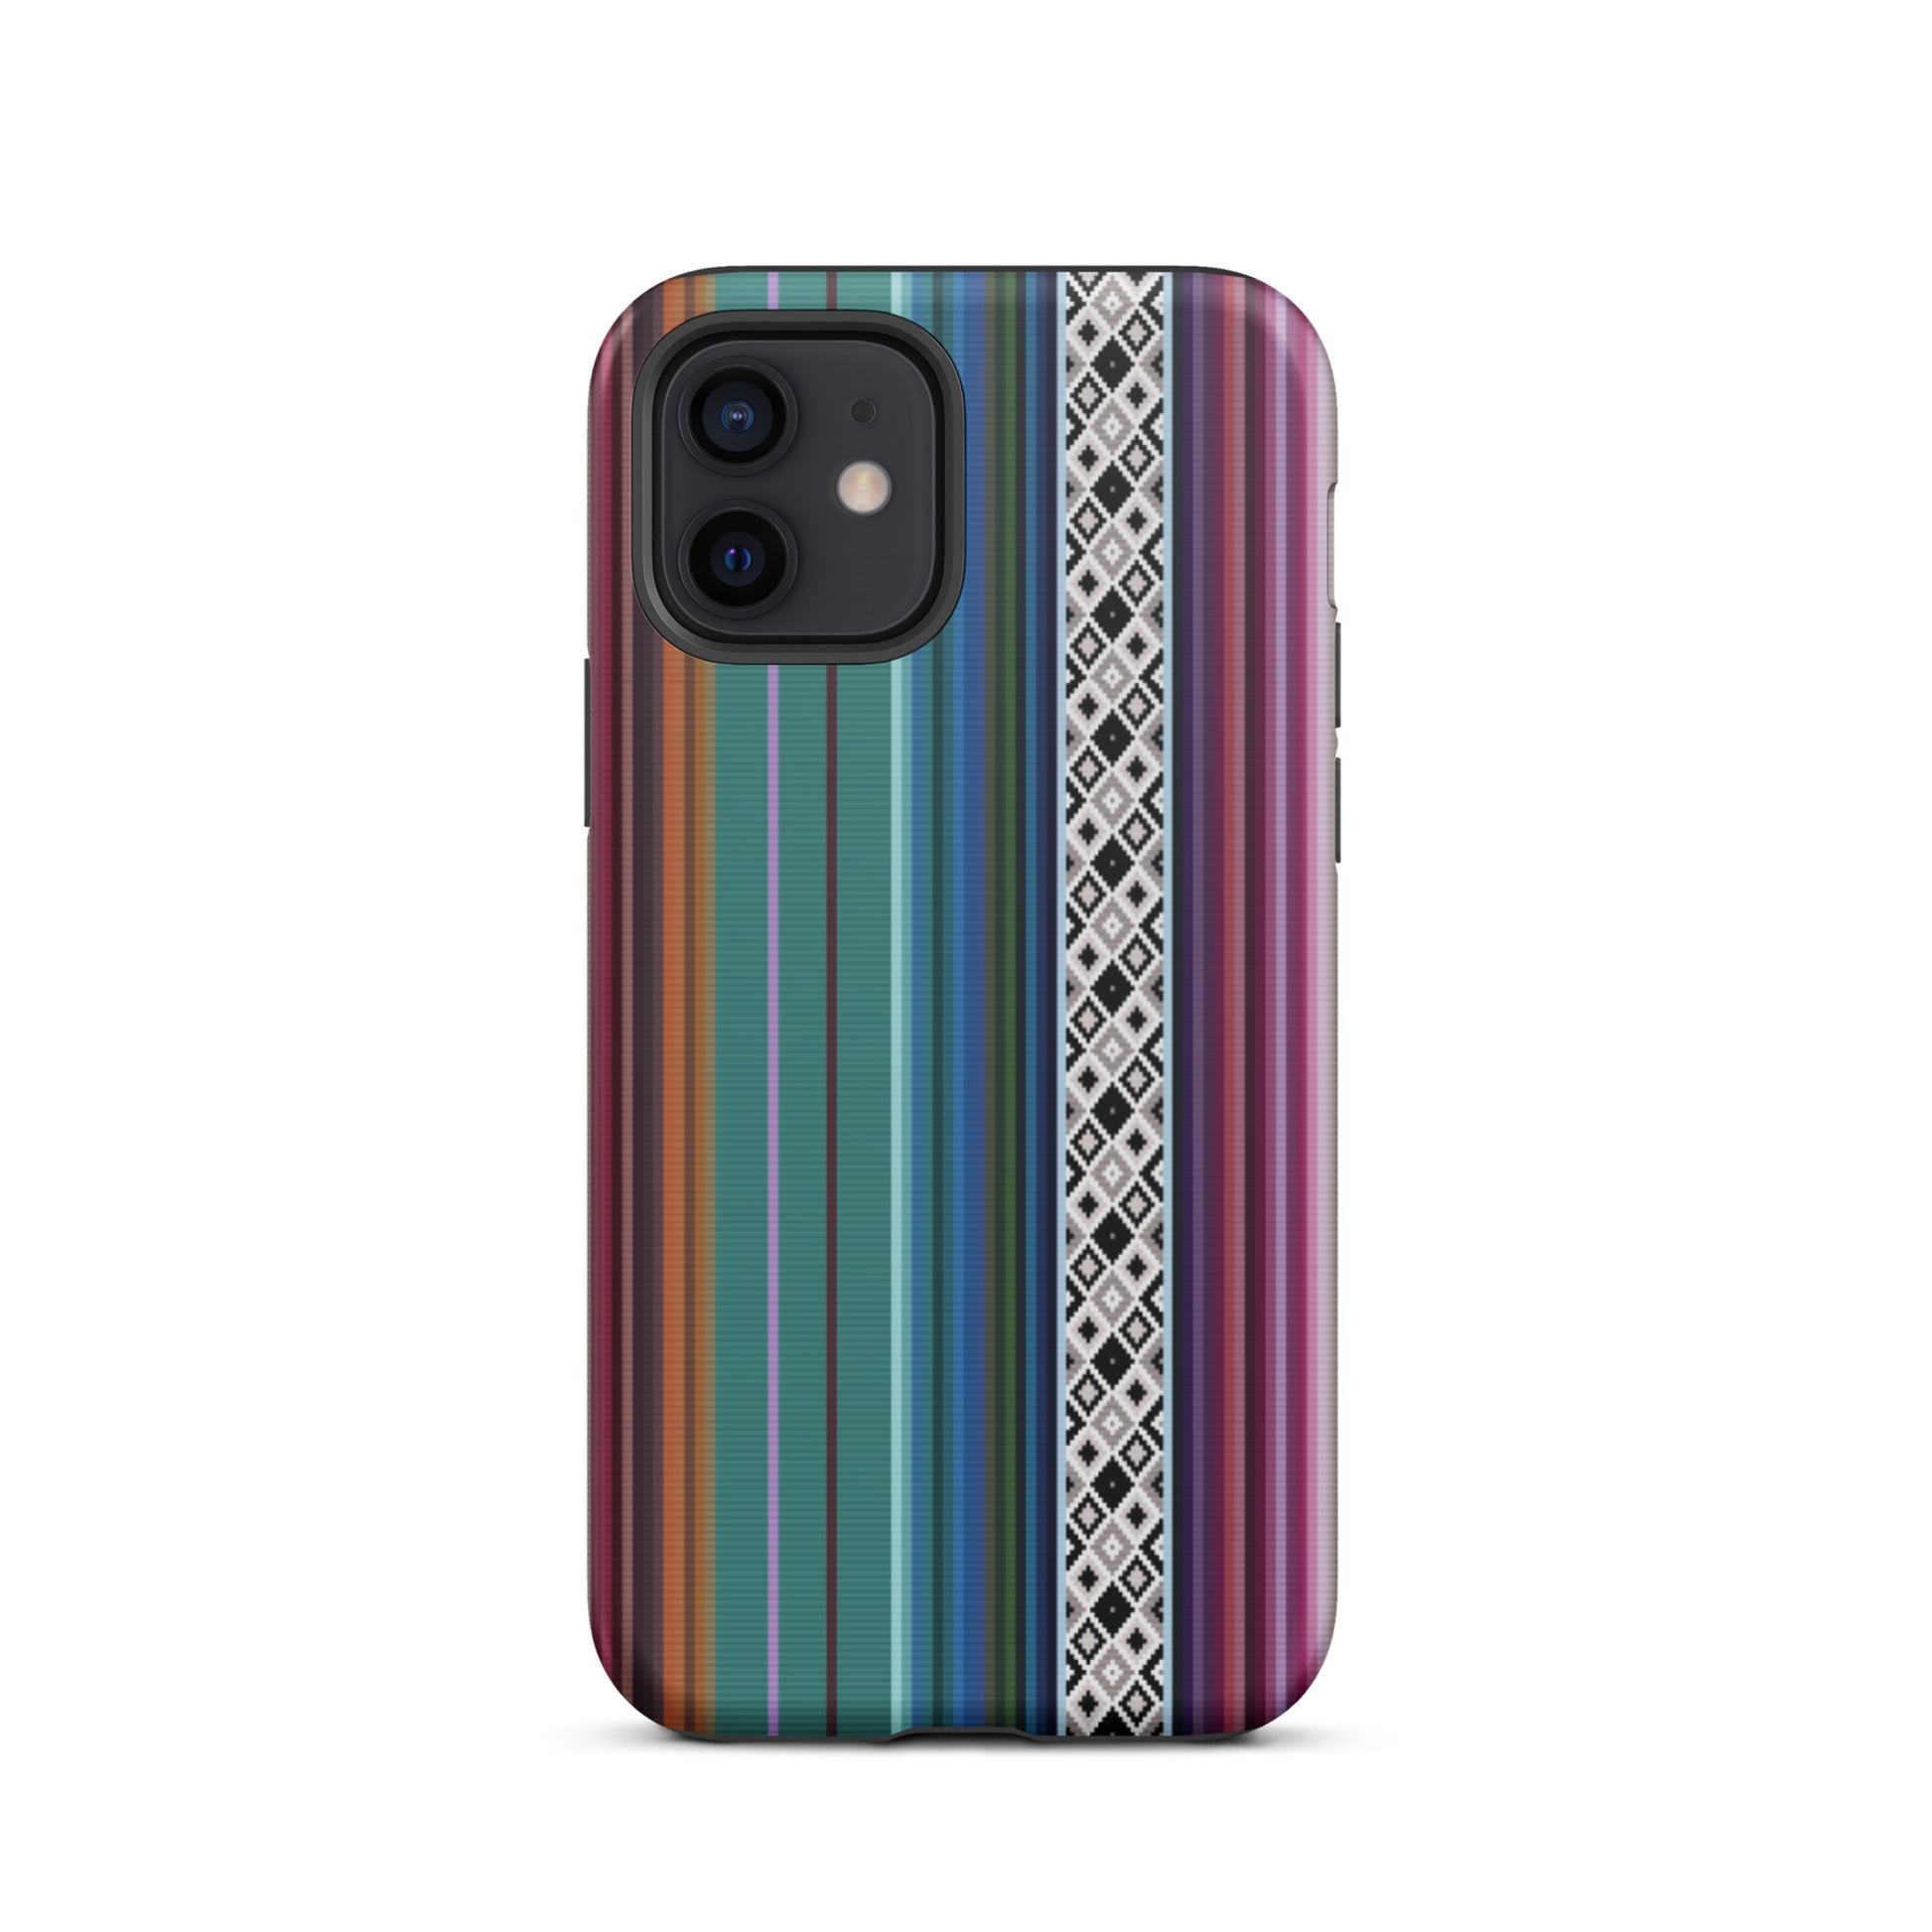 Mexican Aztec Tough iPhone 12 case